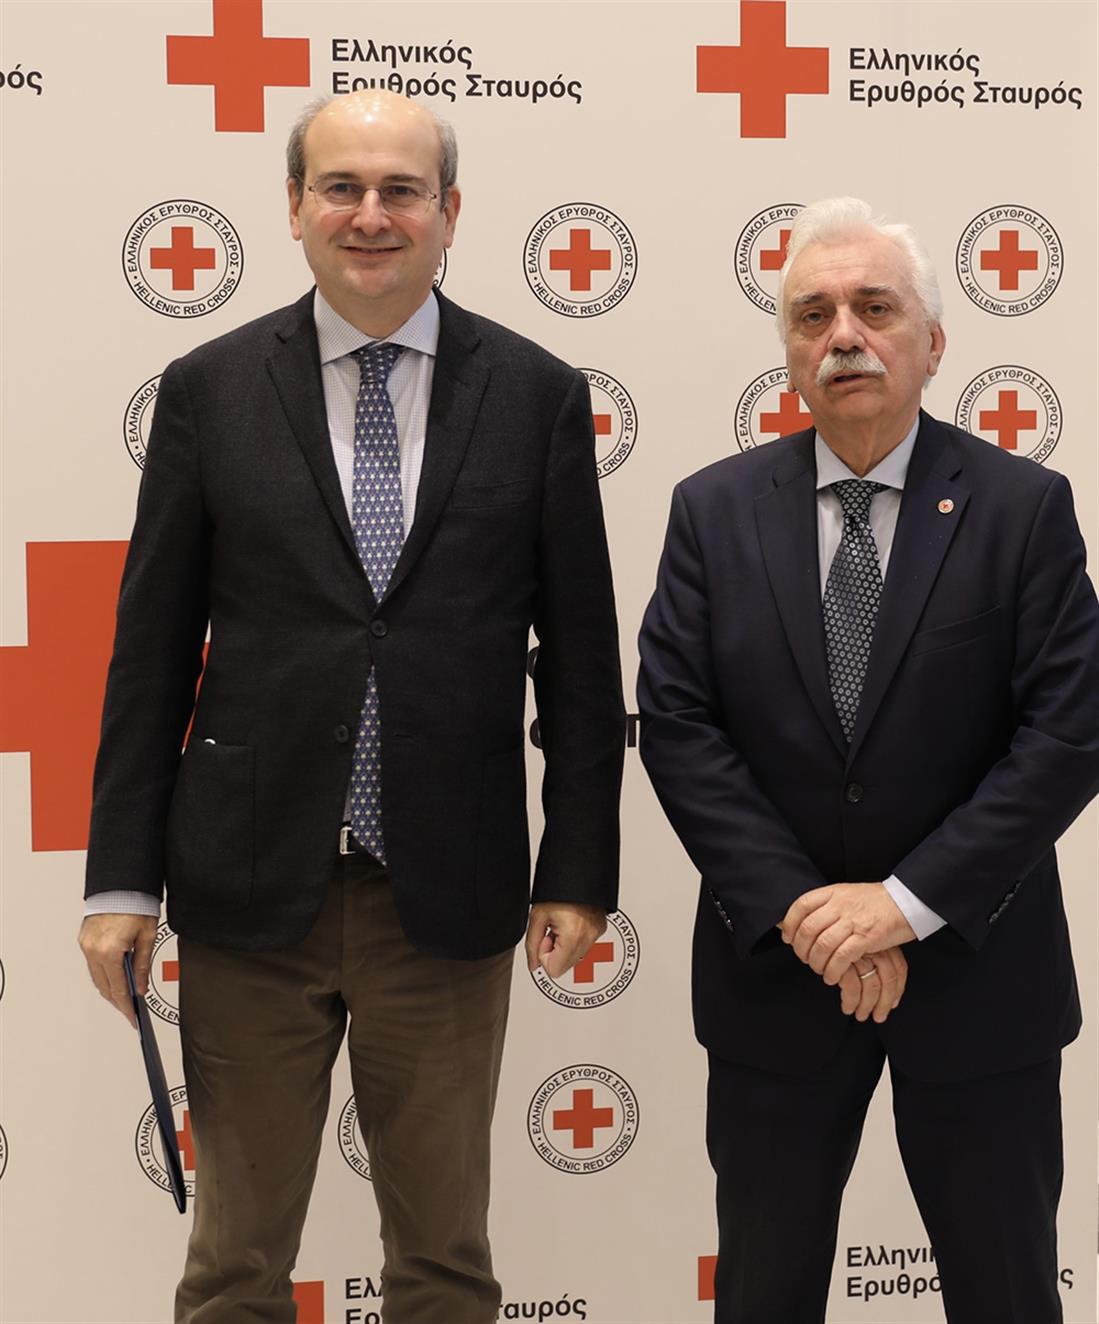 Ελληνικός Ερυθρός Σταυρός - ημερίδα - Προστασία των Παιδιών